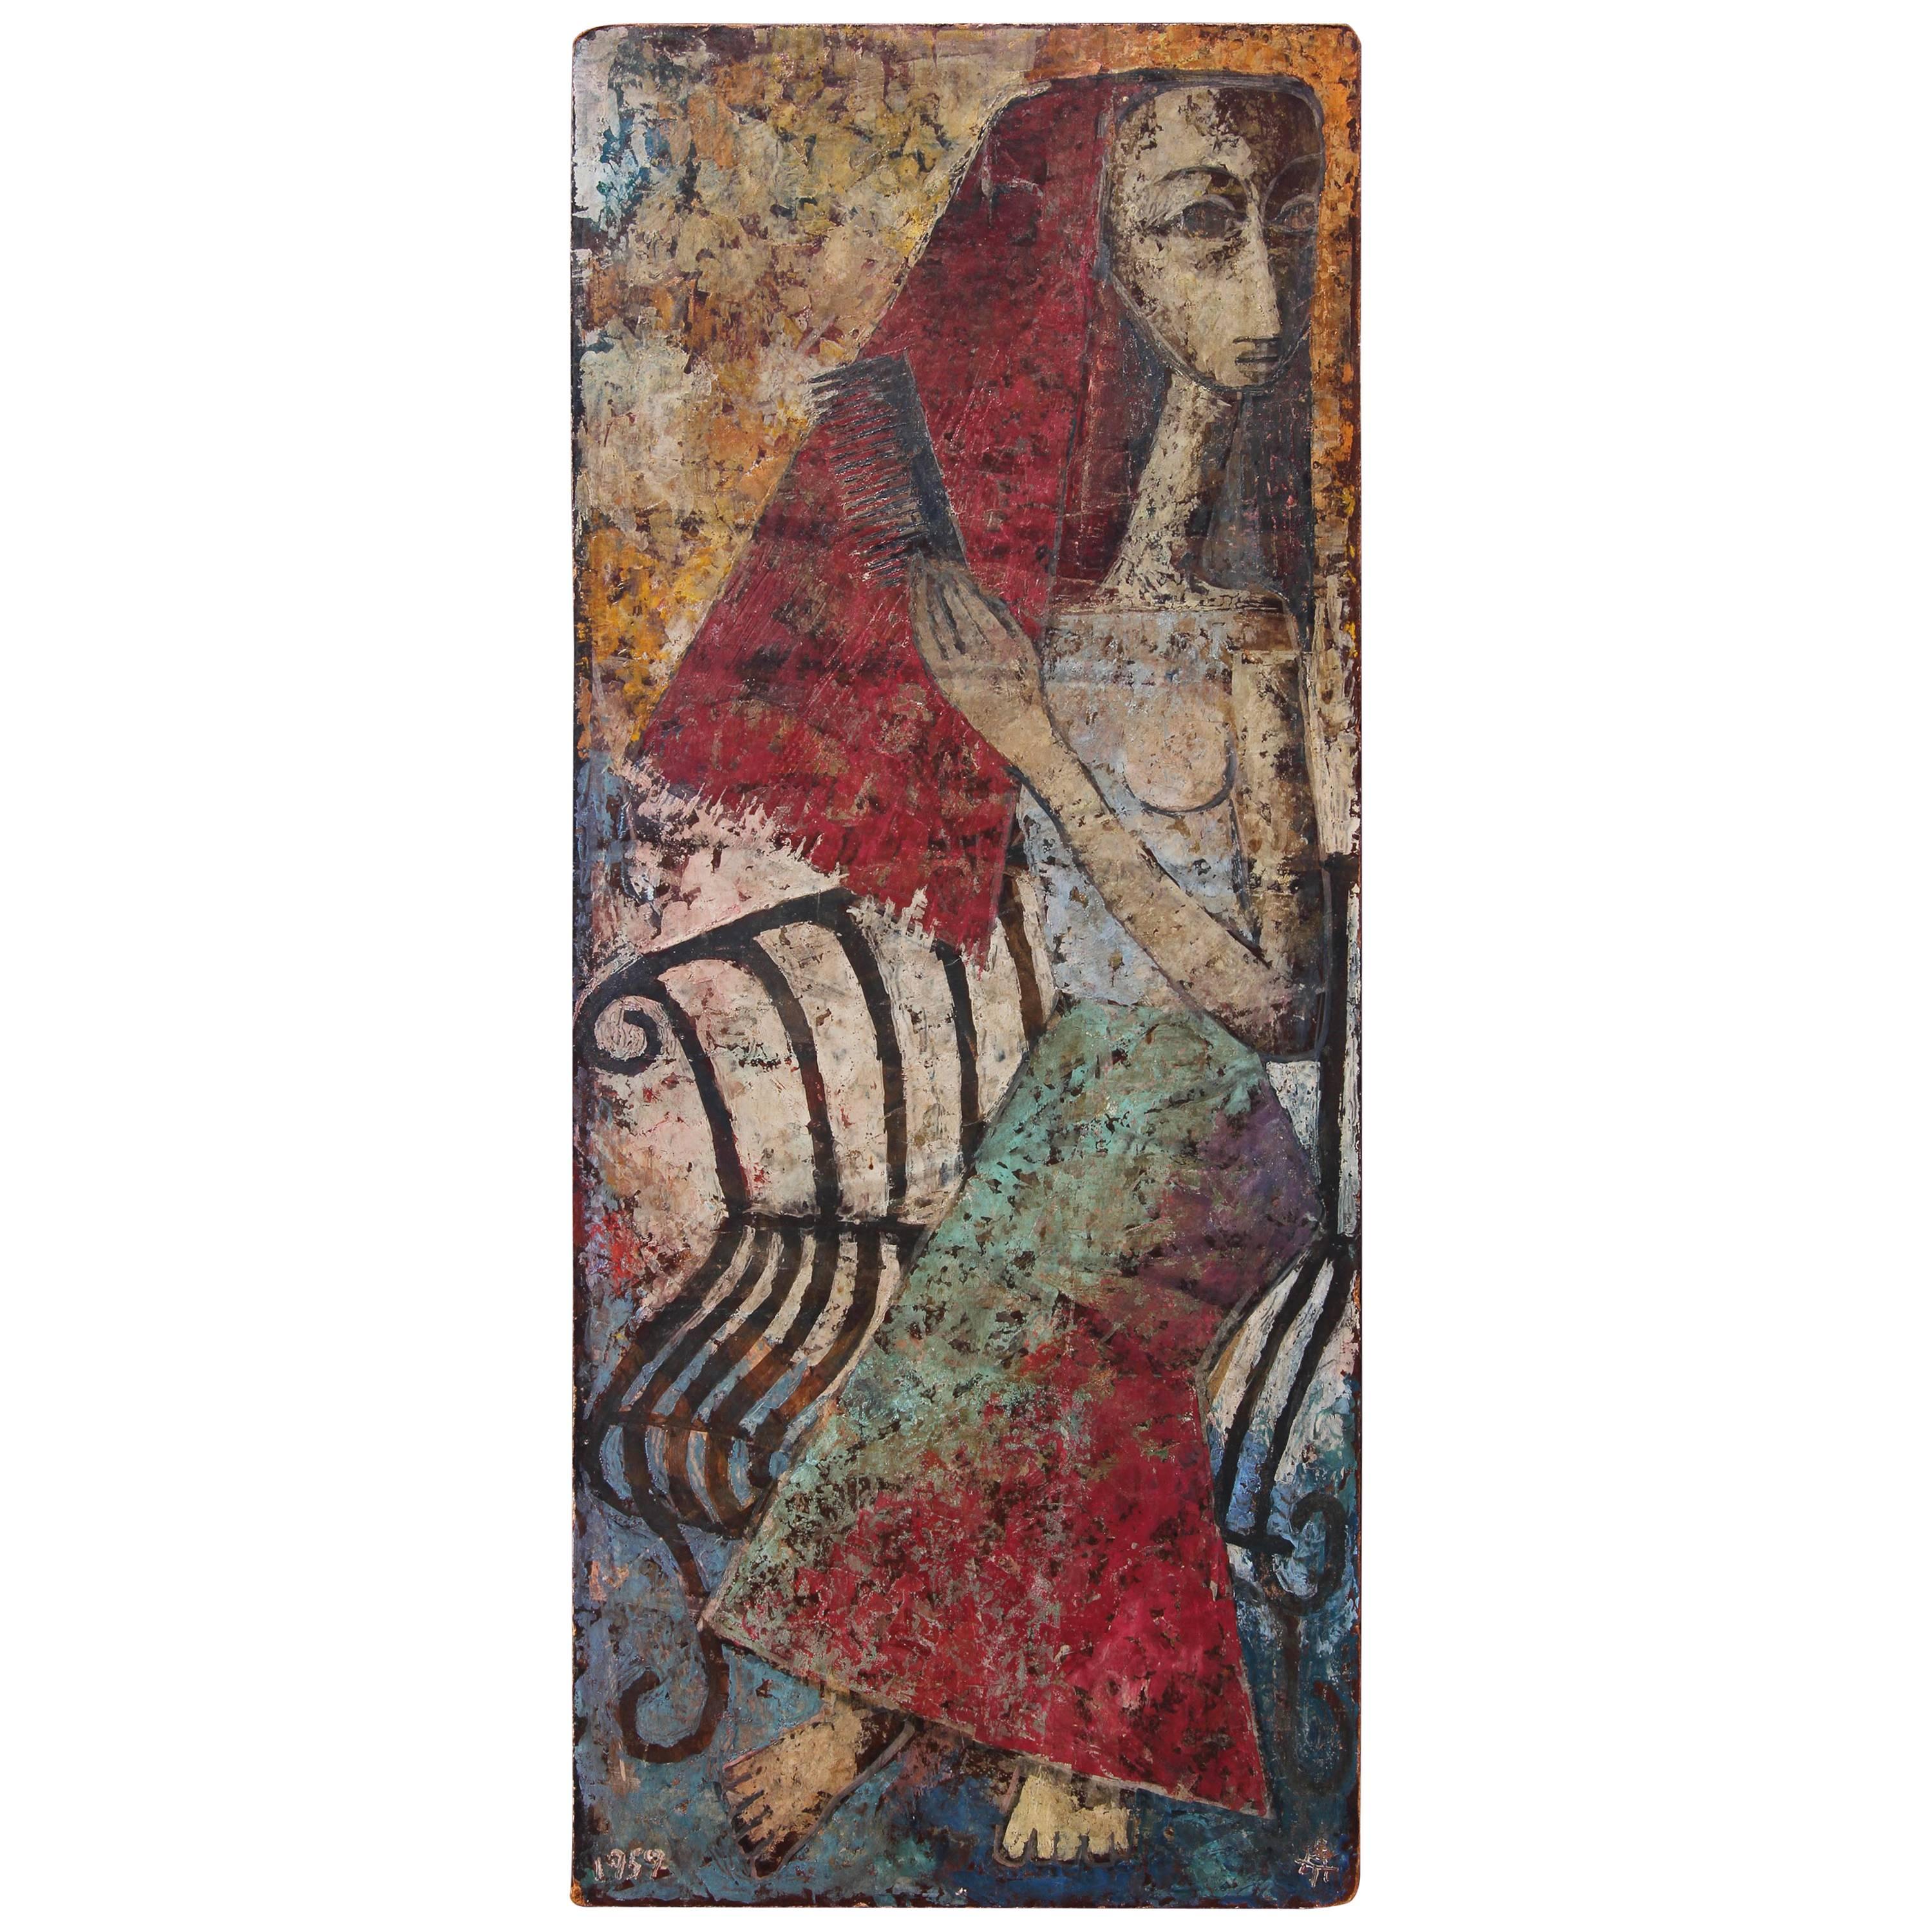 "Femme mexicaine" - Peinture à l'huile impressionniste abstraite datée de 1959